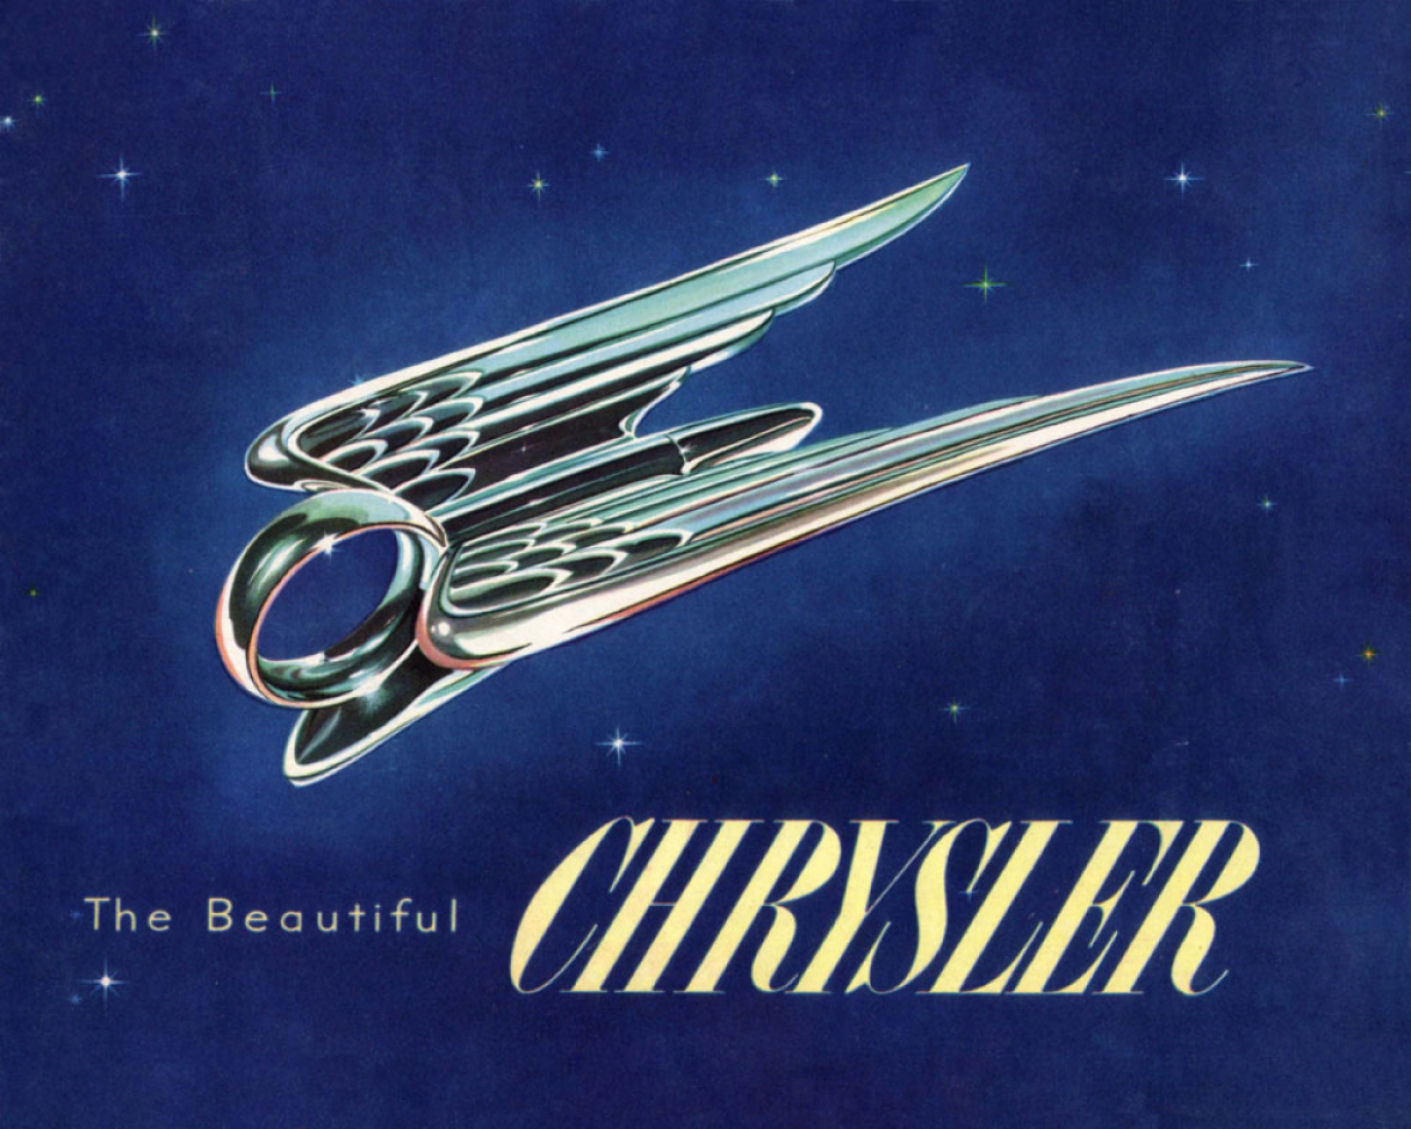 1951 Chrysler Full Line Brochure